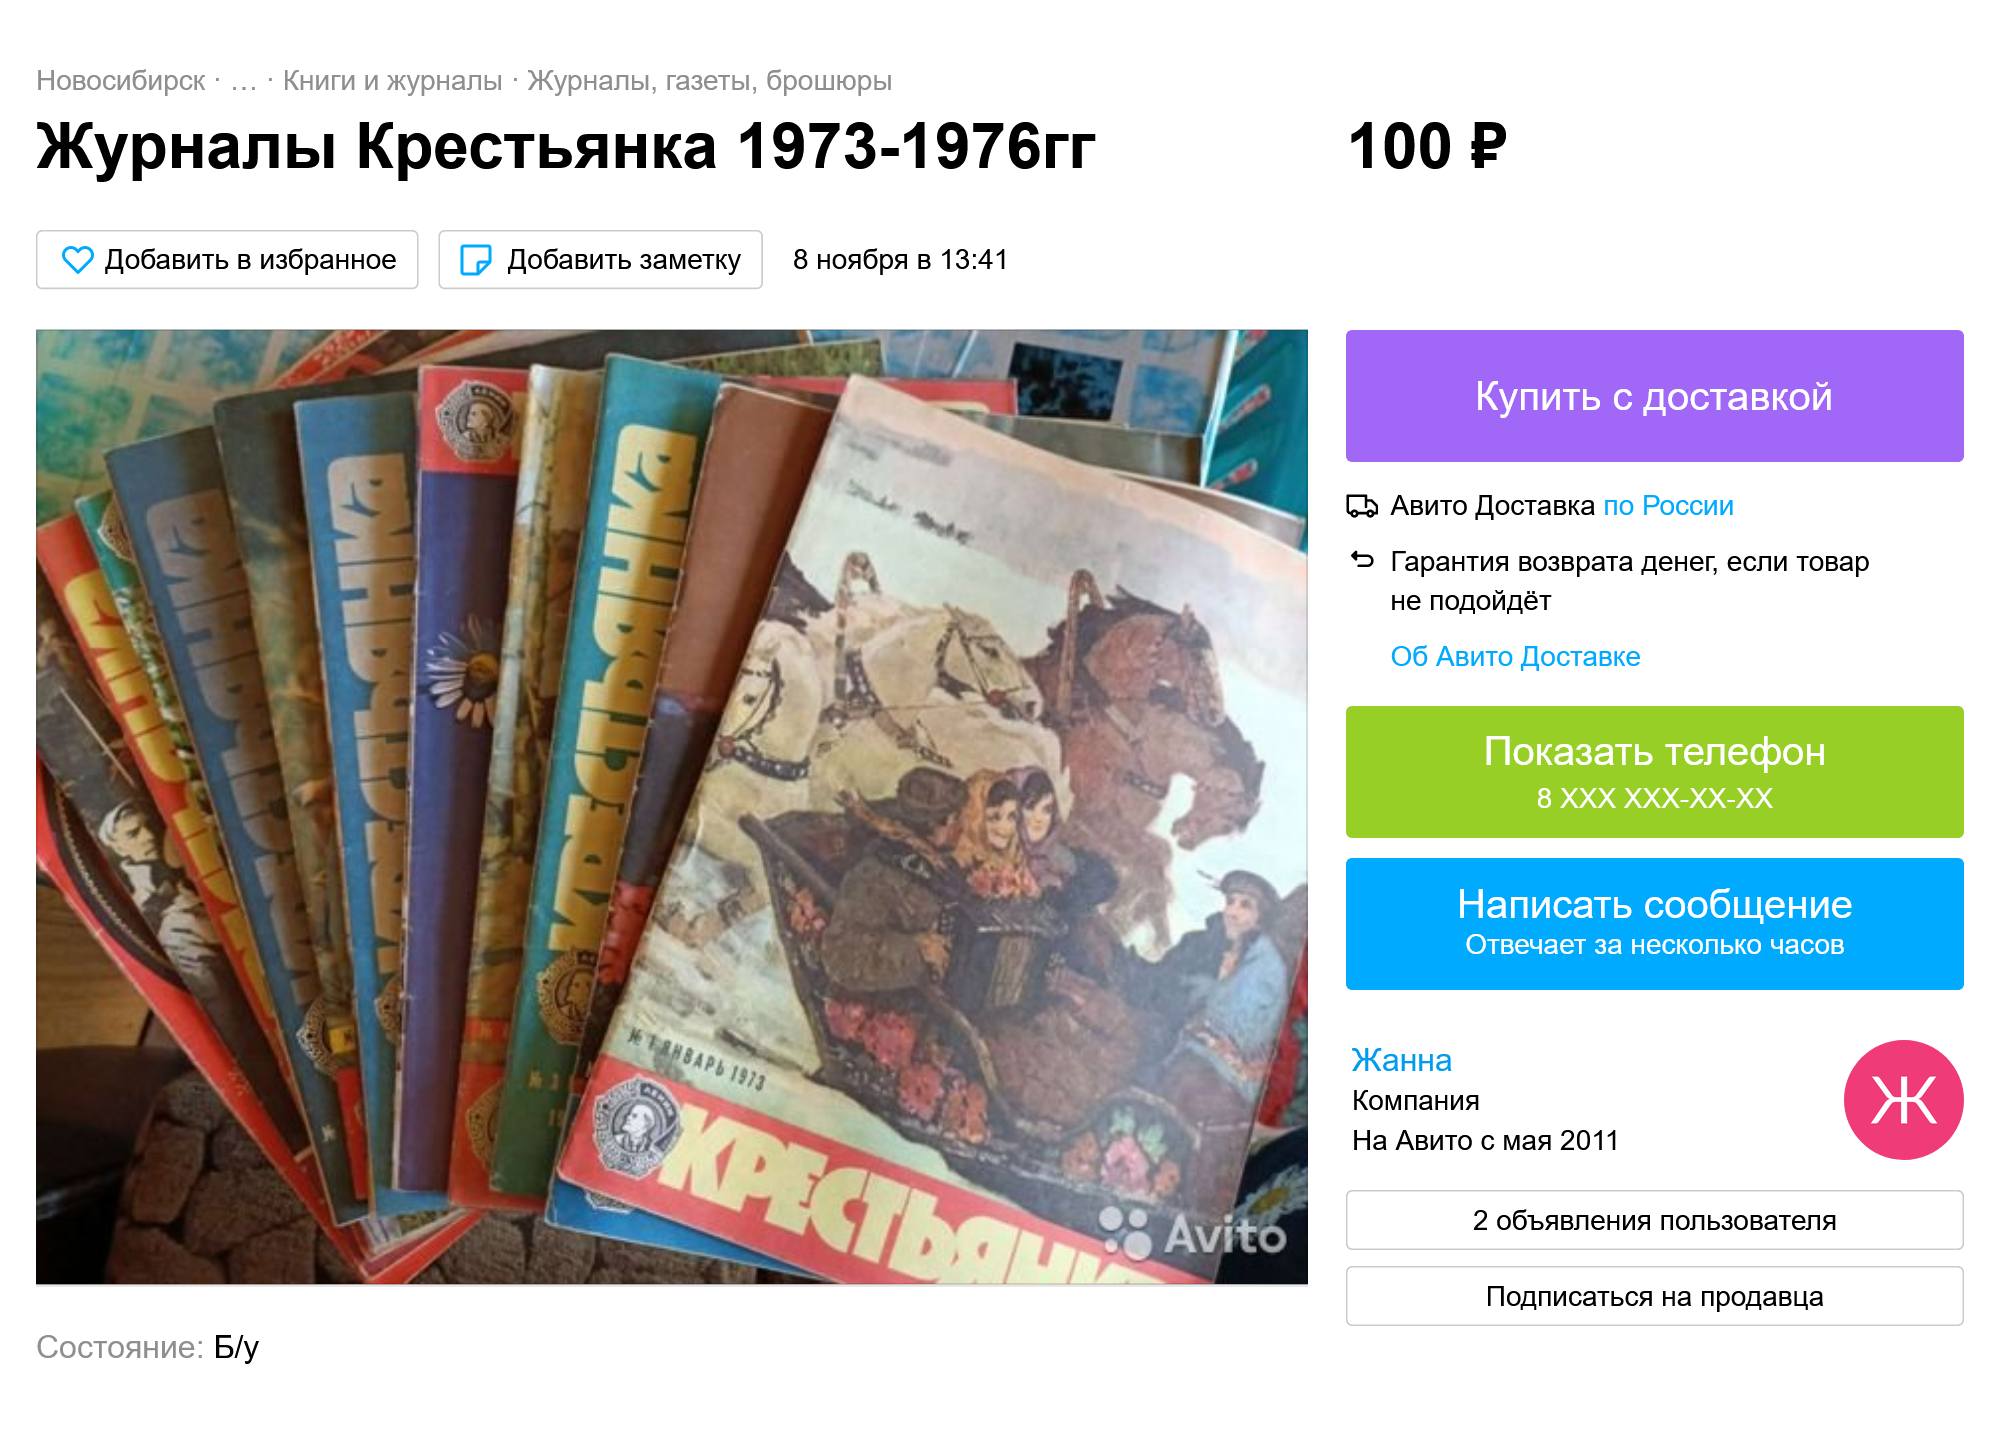 Я интересуюсь советской культурой, поэтому обращаю внимание и на периодику 1970-х. Вот, например, подборка журналов «Крестьянка» всего за 100 ₽